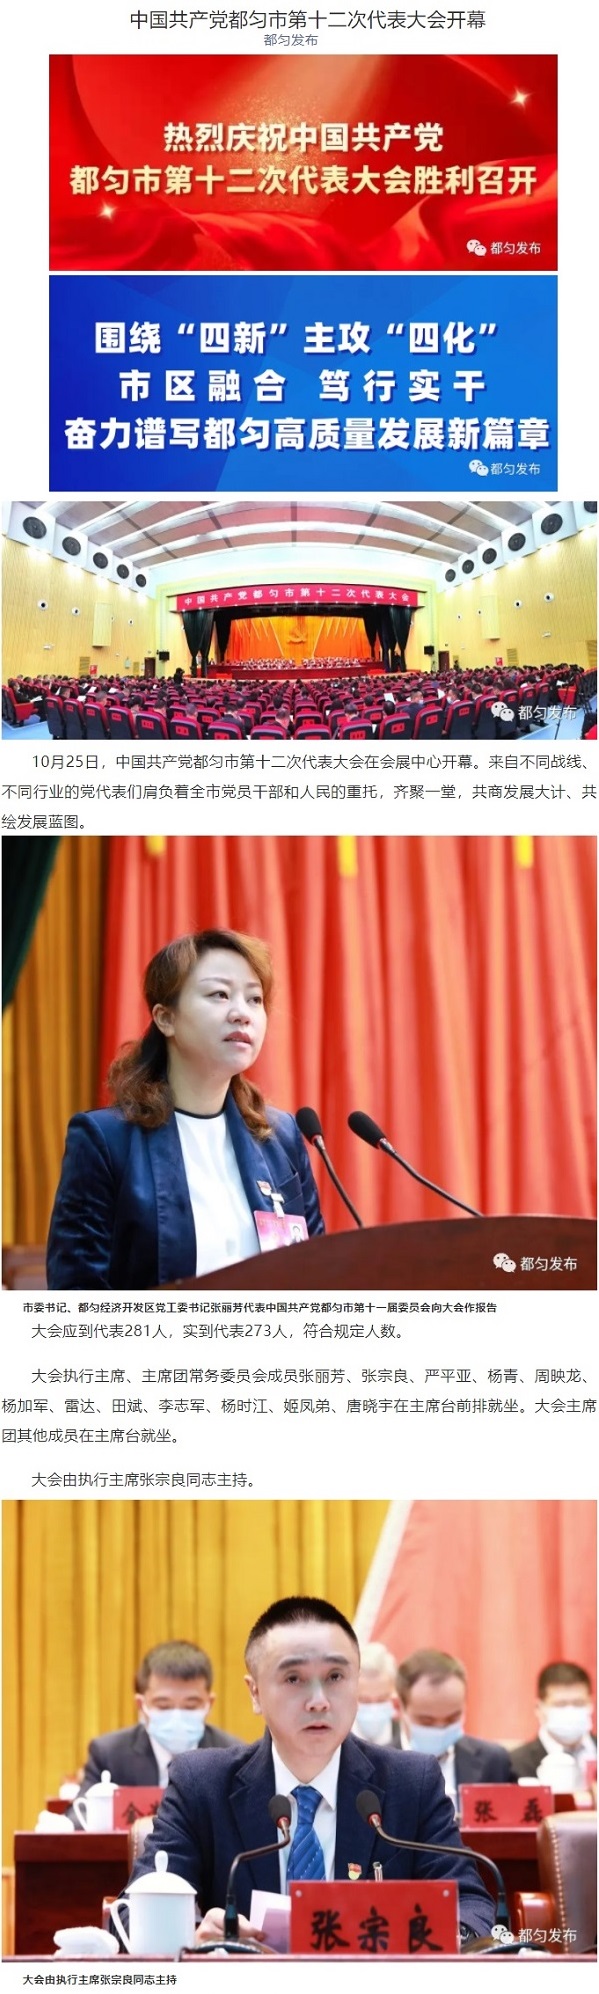 20211025-中国共产党都匀市第十二次代表大会开幕01.jpg